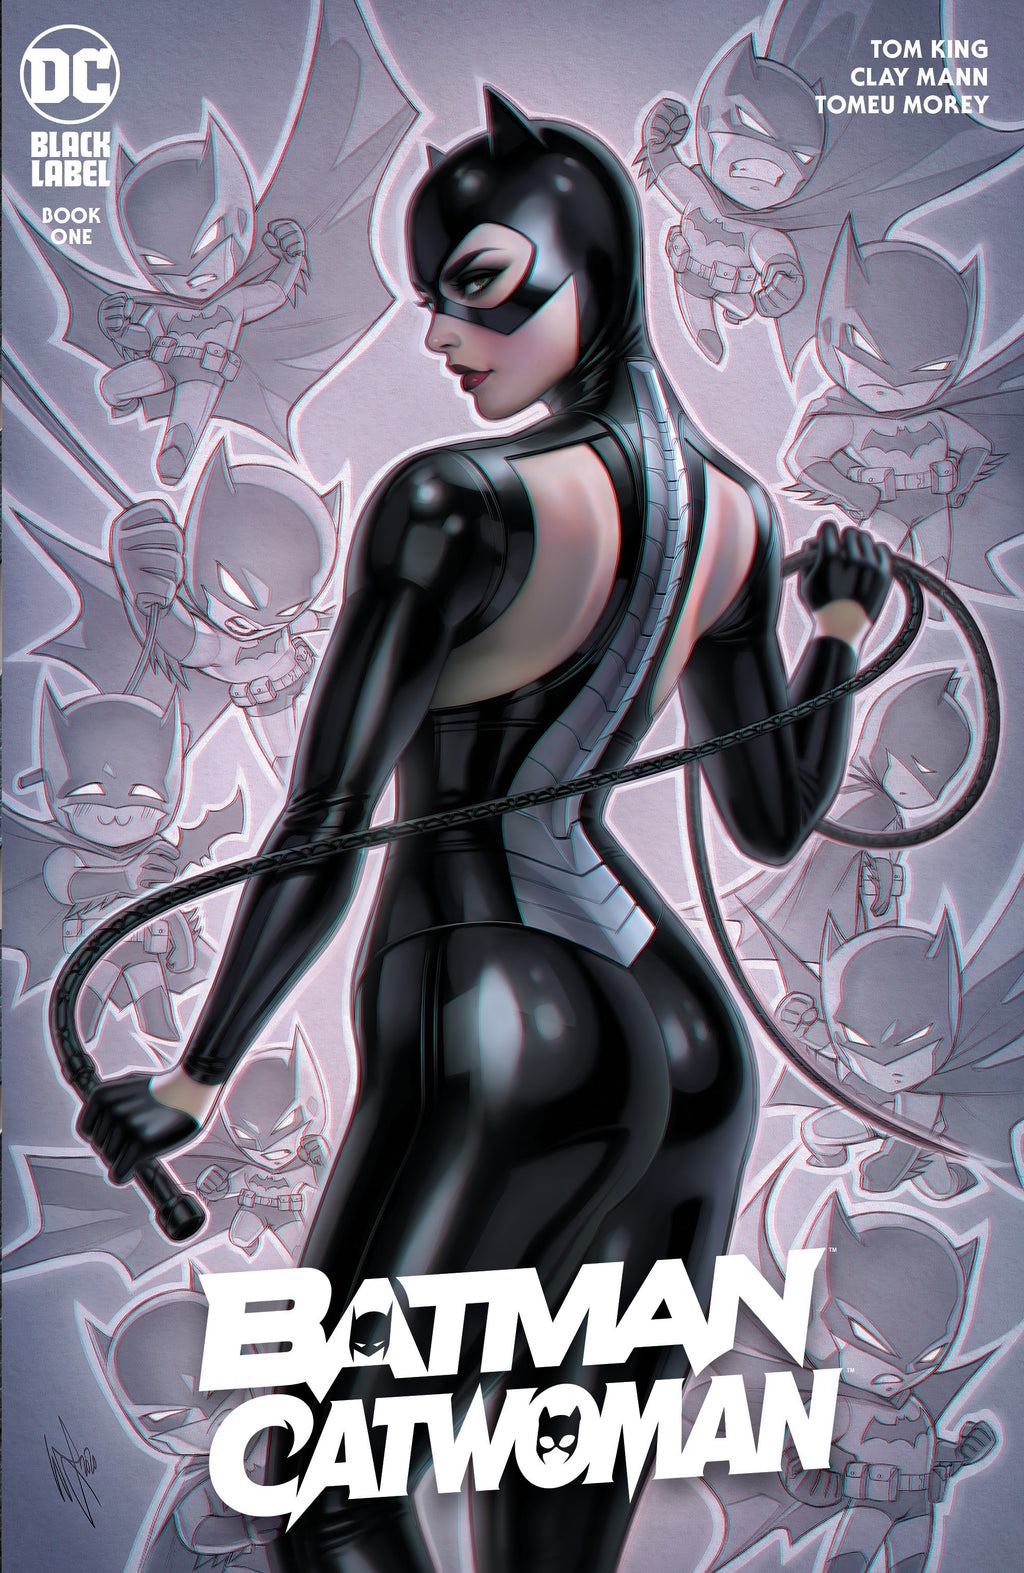 Batman/Catwoman Begins!